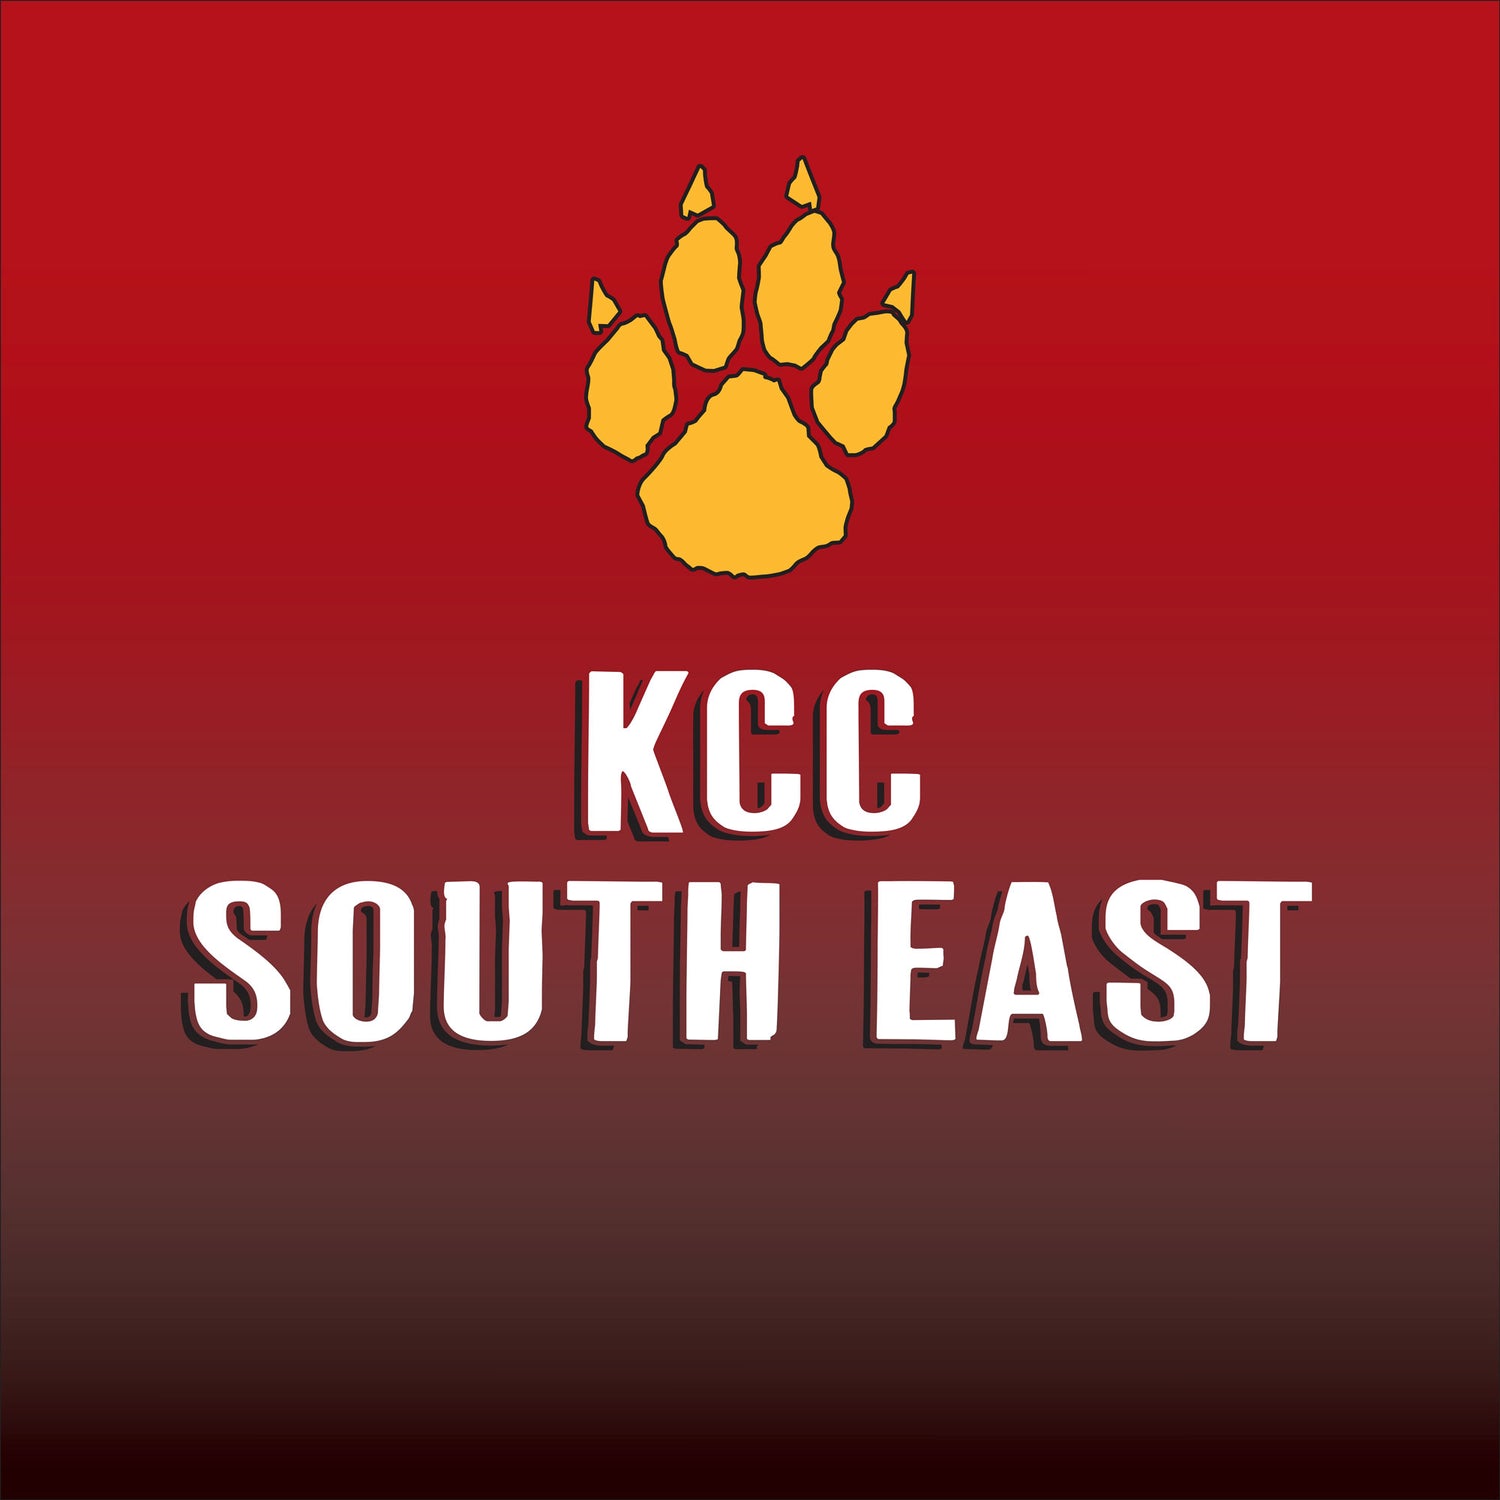 KCC Southeast